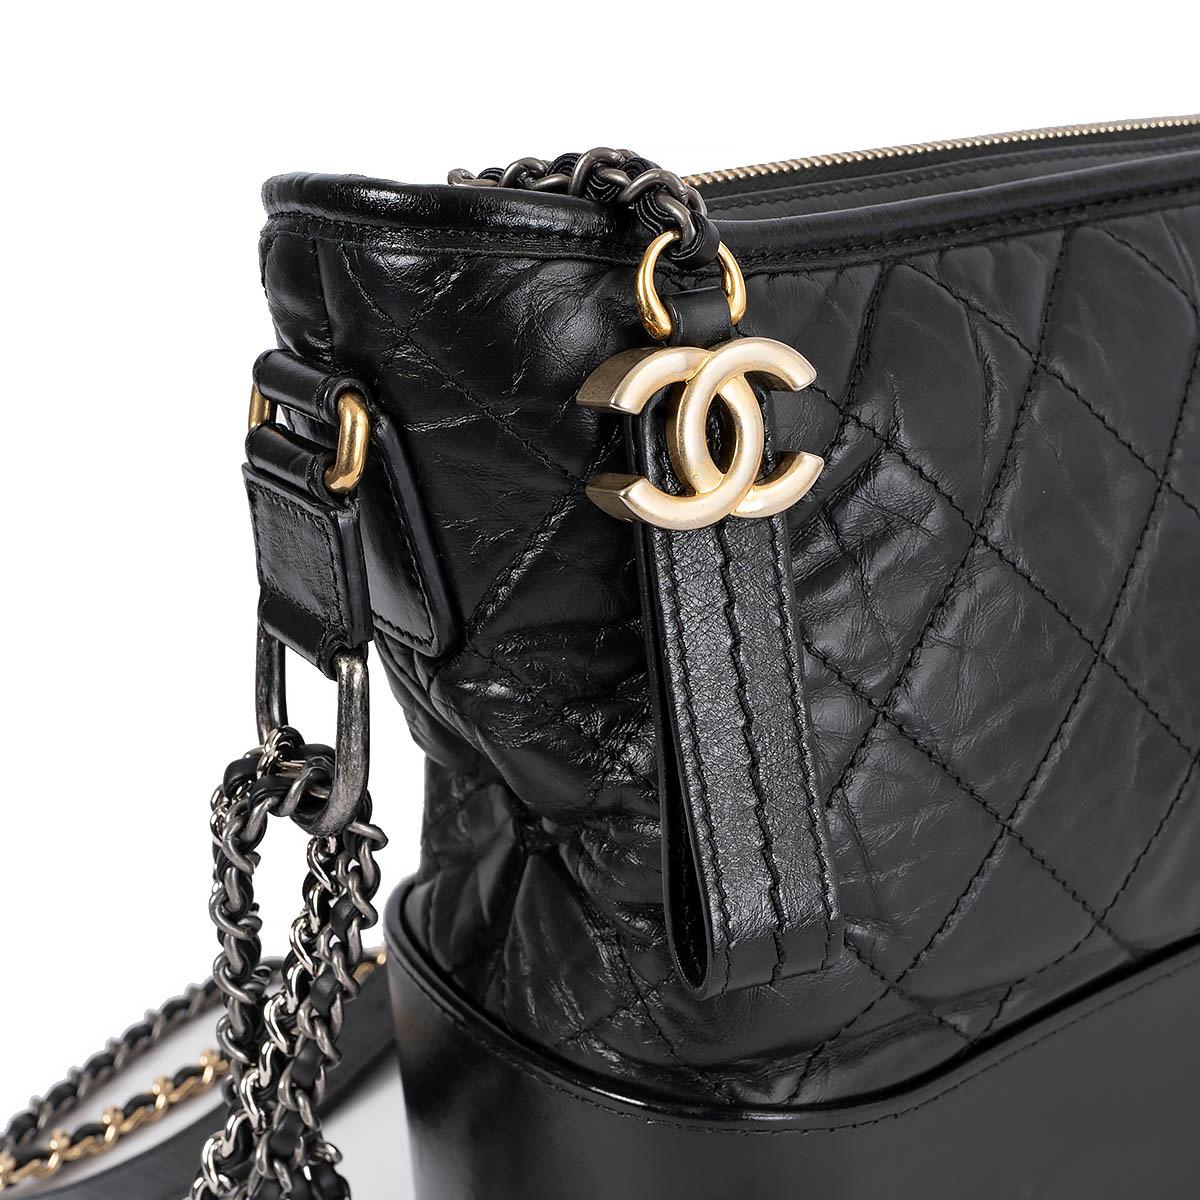 CHANEL black Aged Calfskin leather GABRIELLE MEDIUM HOBO Shoulder Bag For Sale 2